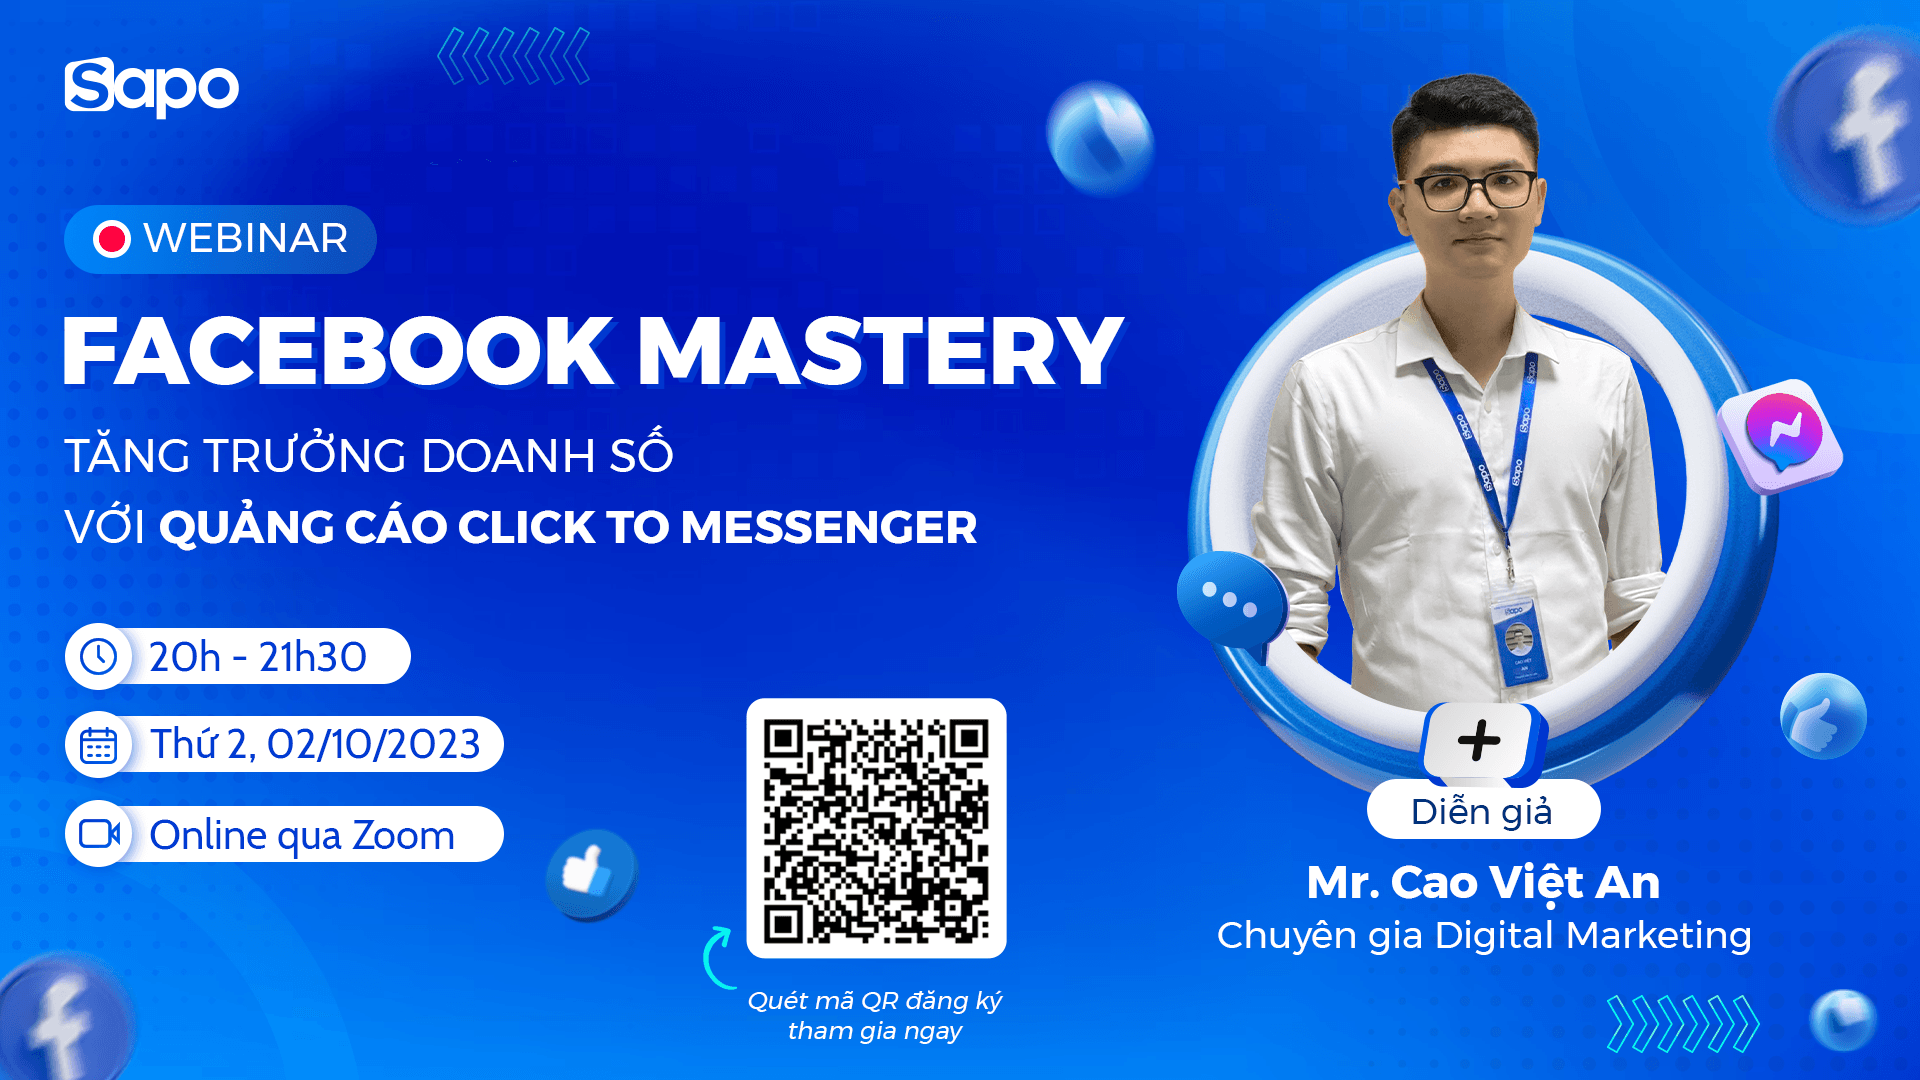 Webinar "FACEBOOK MASTERY - Tăng trưởng doanh số hiệu quả cùng Quảng cáo Click to Messenger trên Sapo"